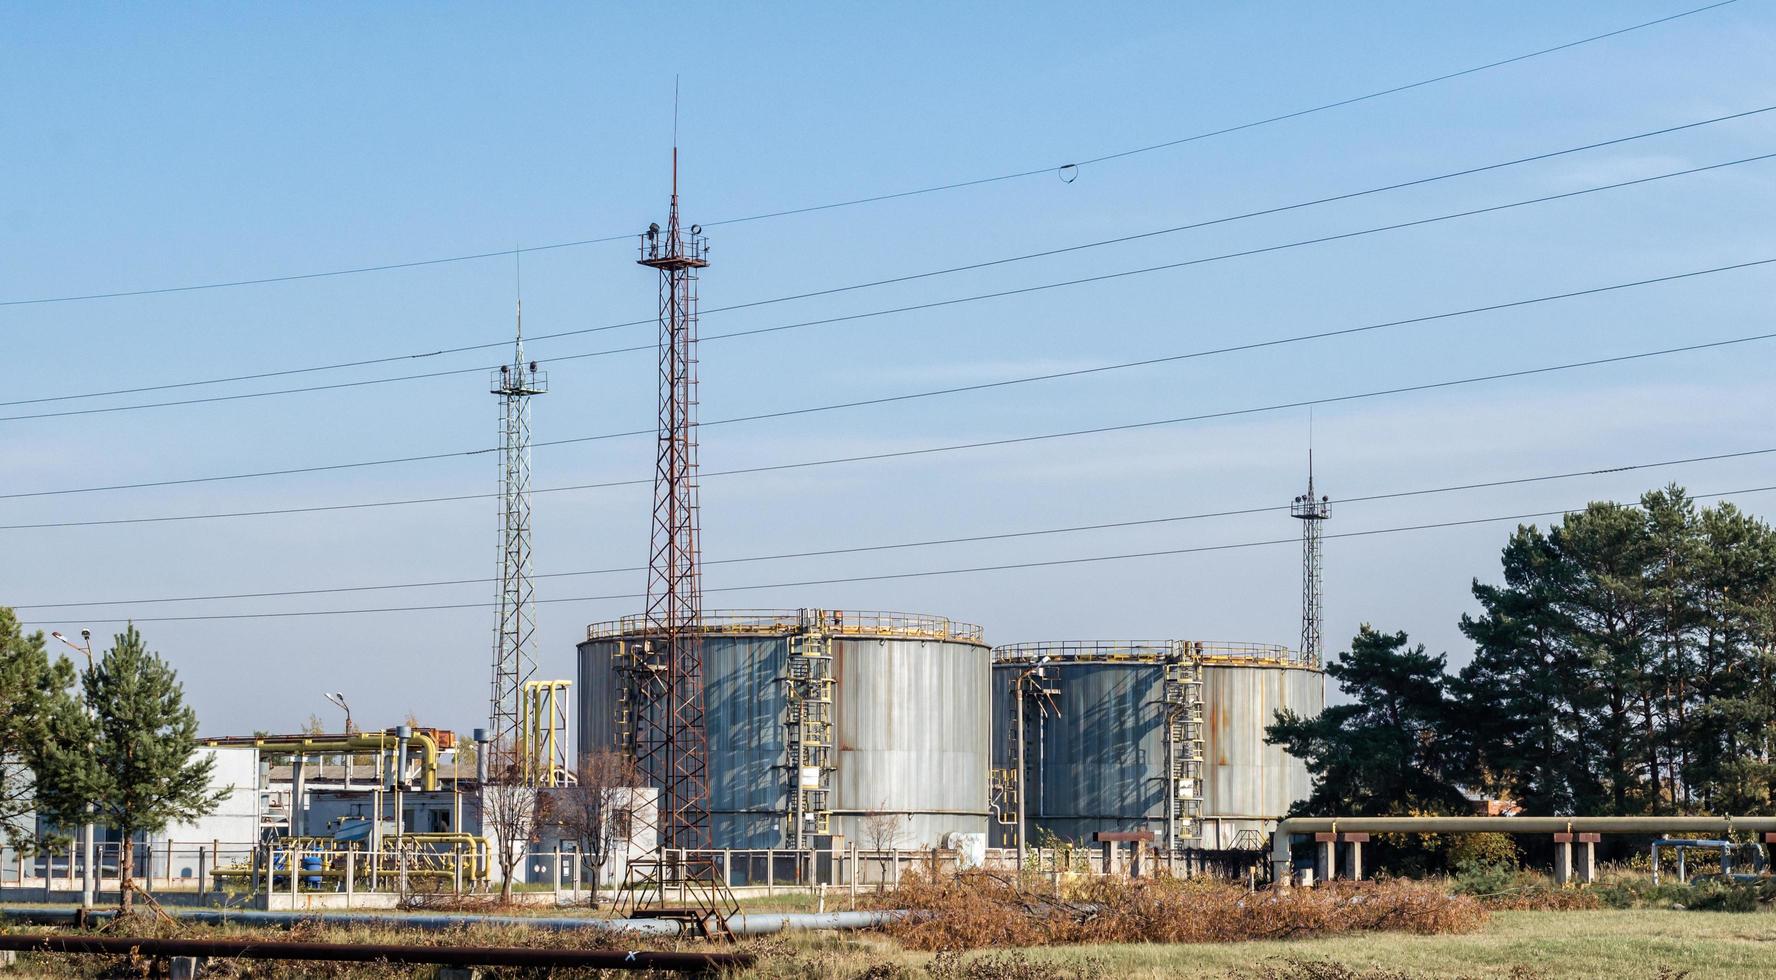 pripyat, Ukraina, 2021 - byggande av kärnavfall i Tjernobyl foto